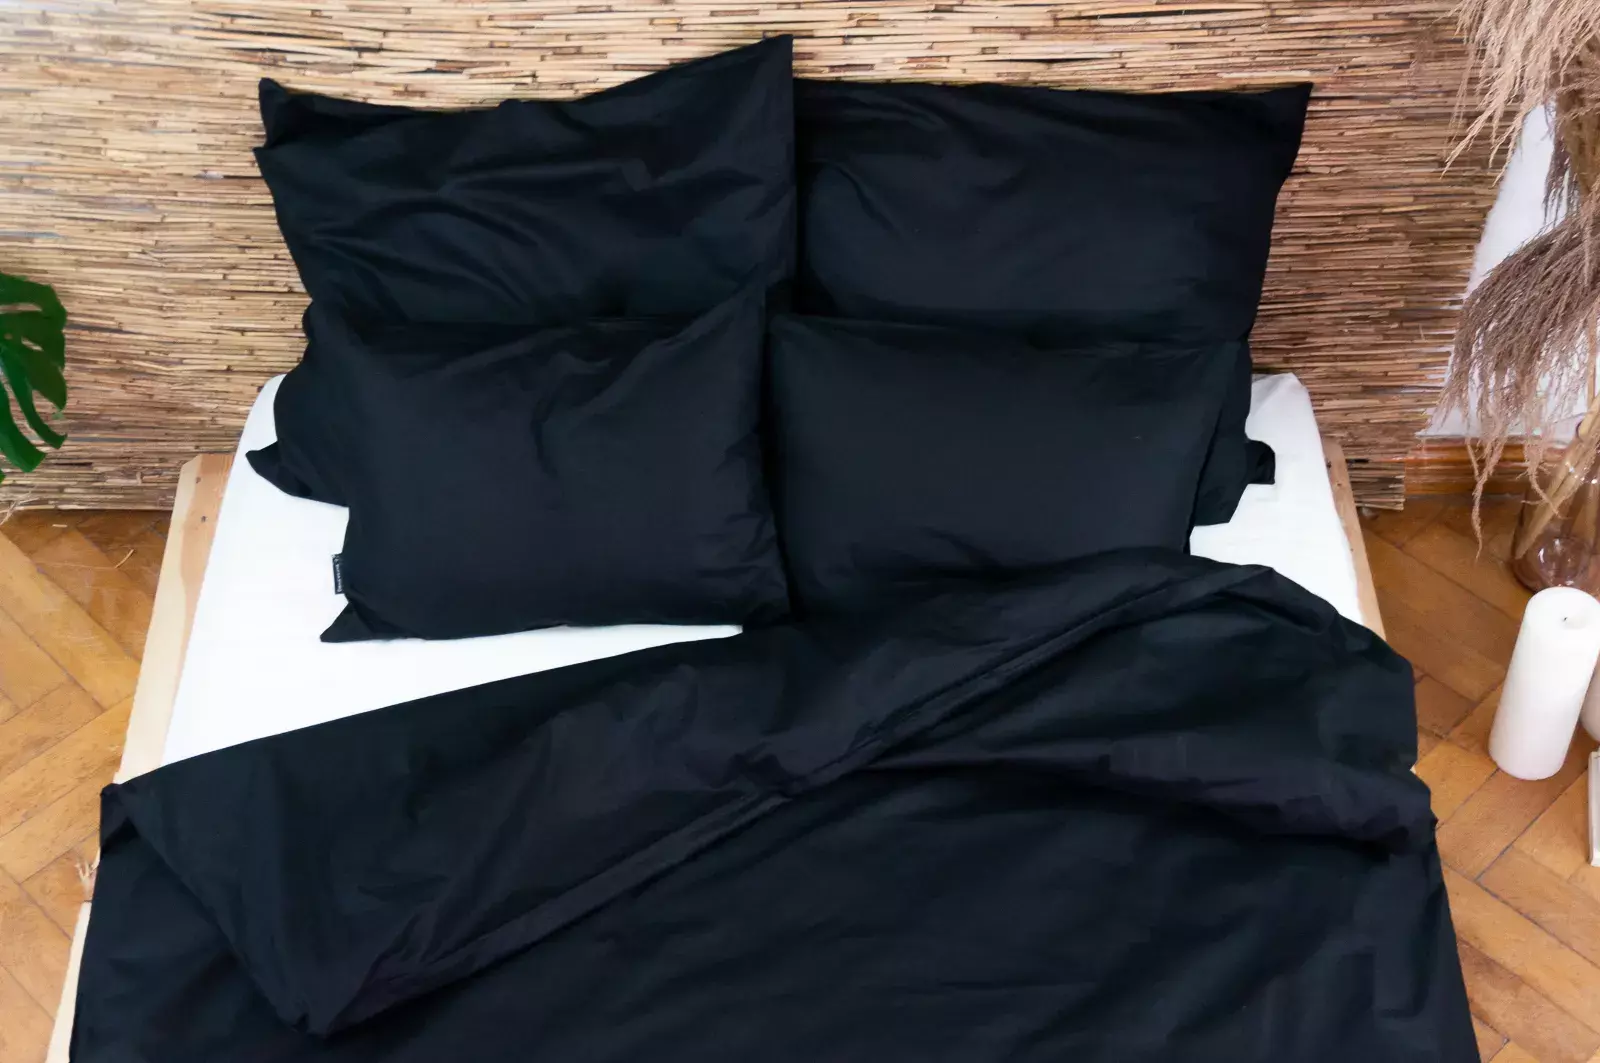 Czarna pościel bawełniana +1 poszewka na poduszkę, bawełna 100%